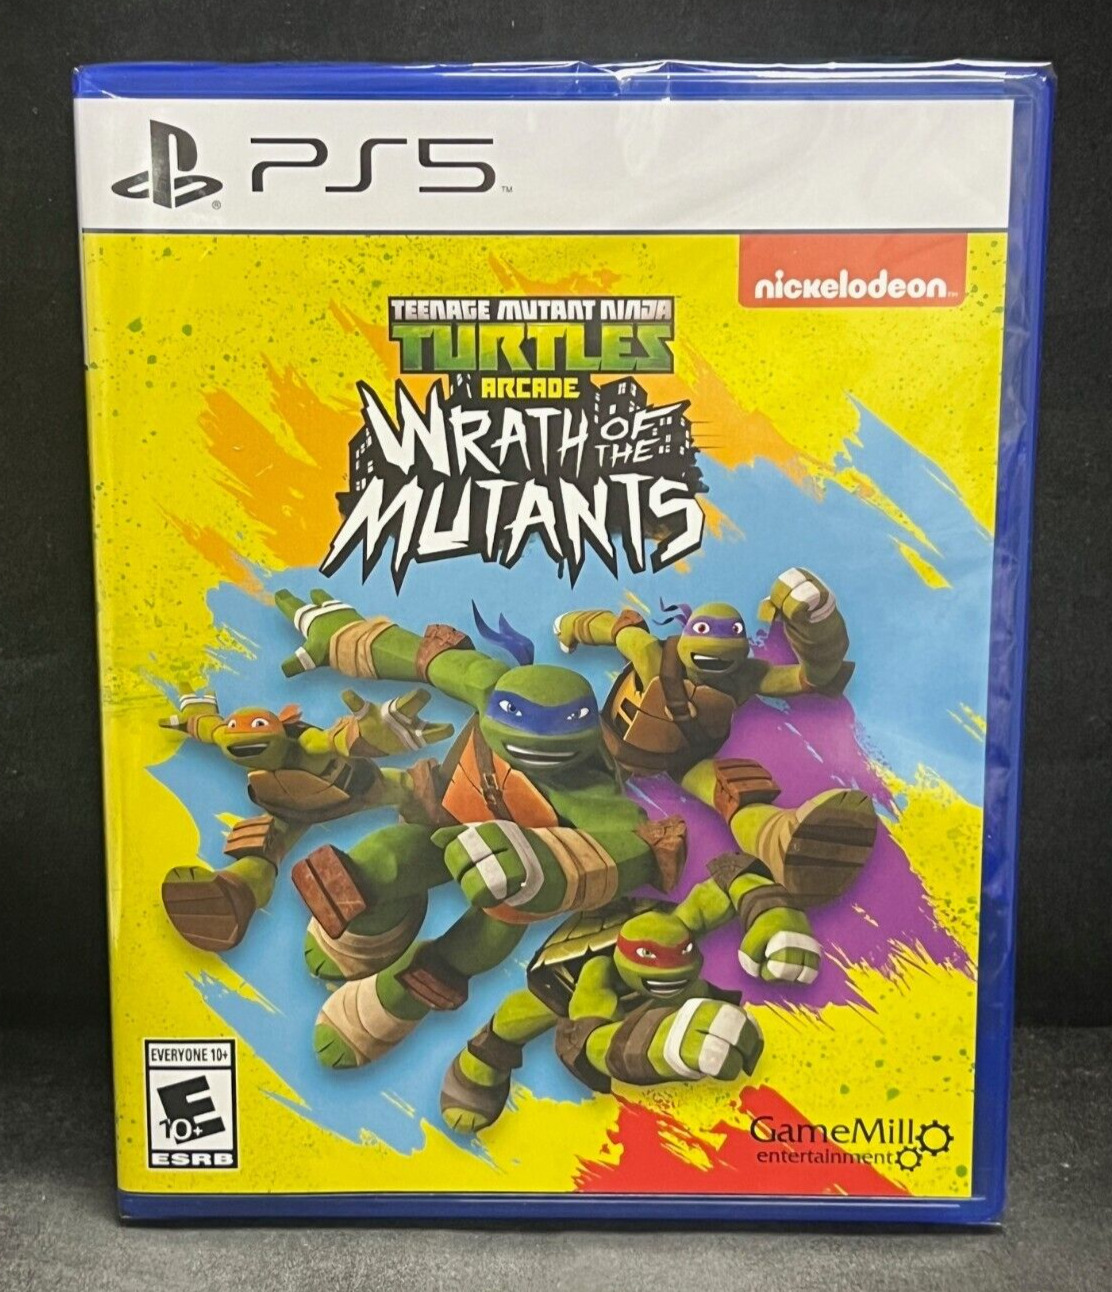 Teenage Mutant Ninja Turtles TMNT Arcade Wrath of the Mutants (PS5) BRAND NEW